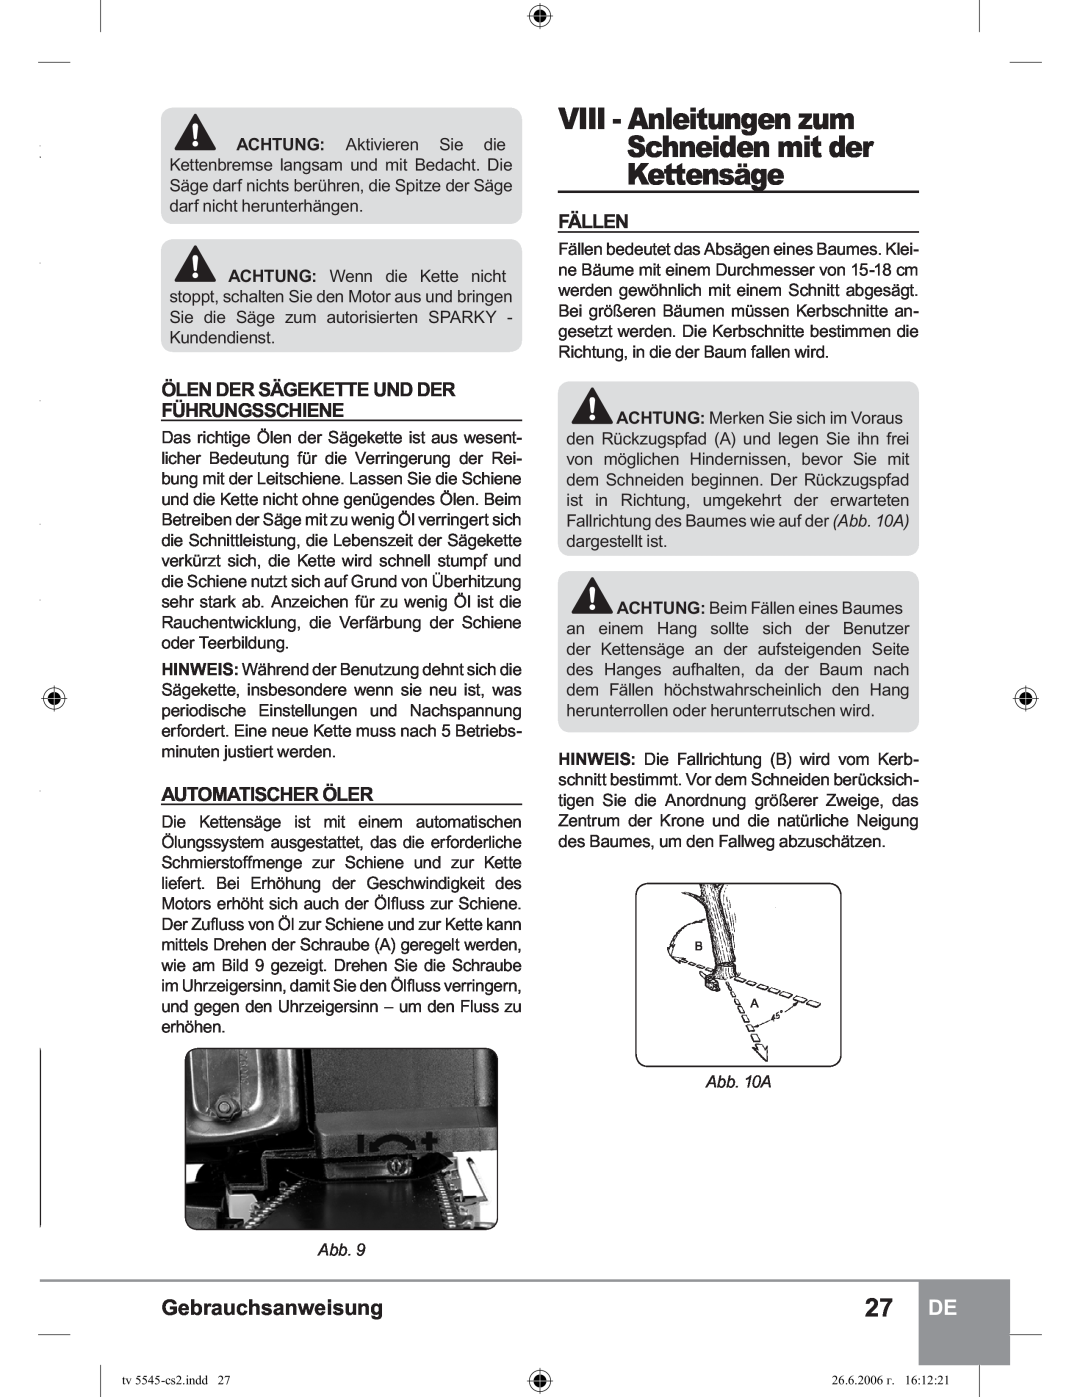 Sparky Group TV 5545 manual VIII - Anleitungen zum Schneiden mit der Kettensäge, Ölen Der Sägekette Und Der Führungsschiene 